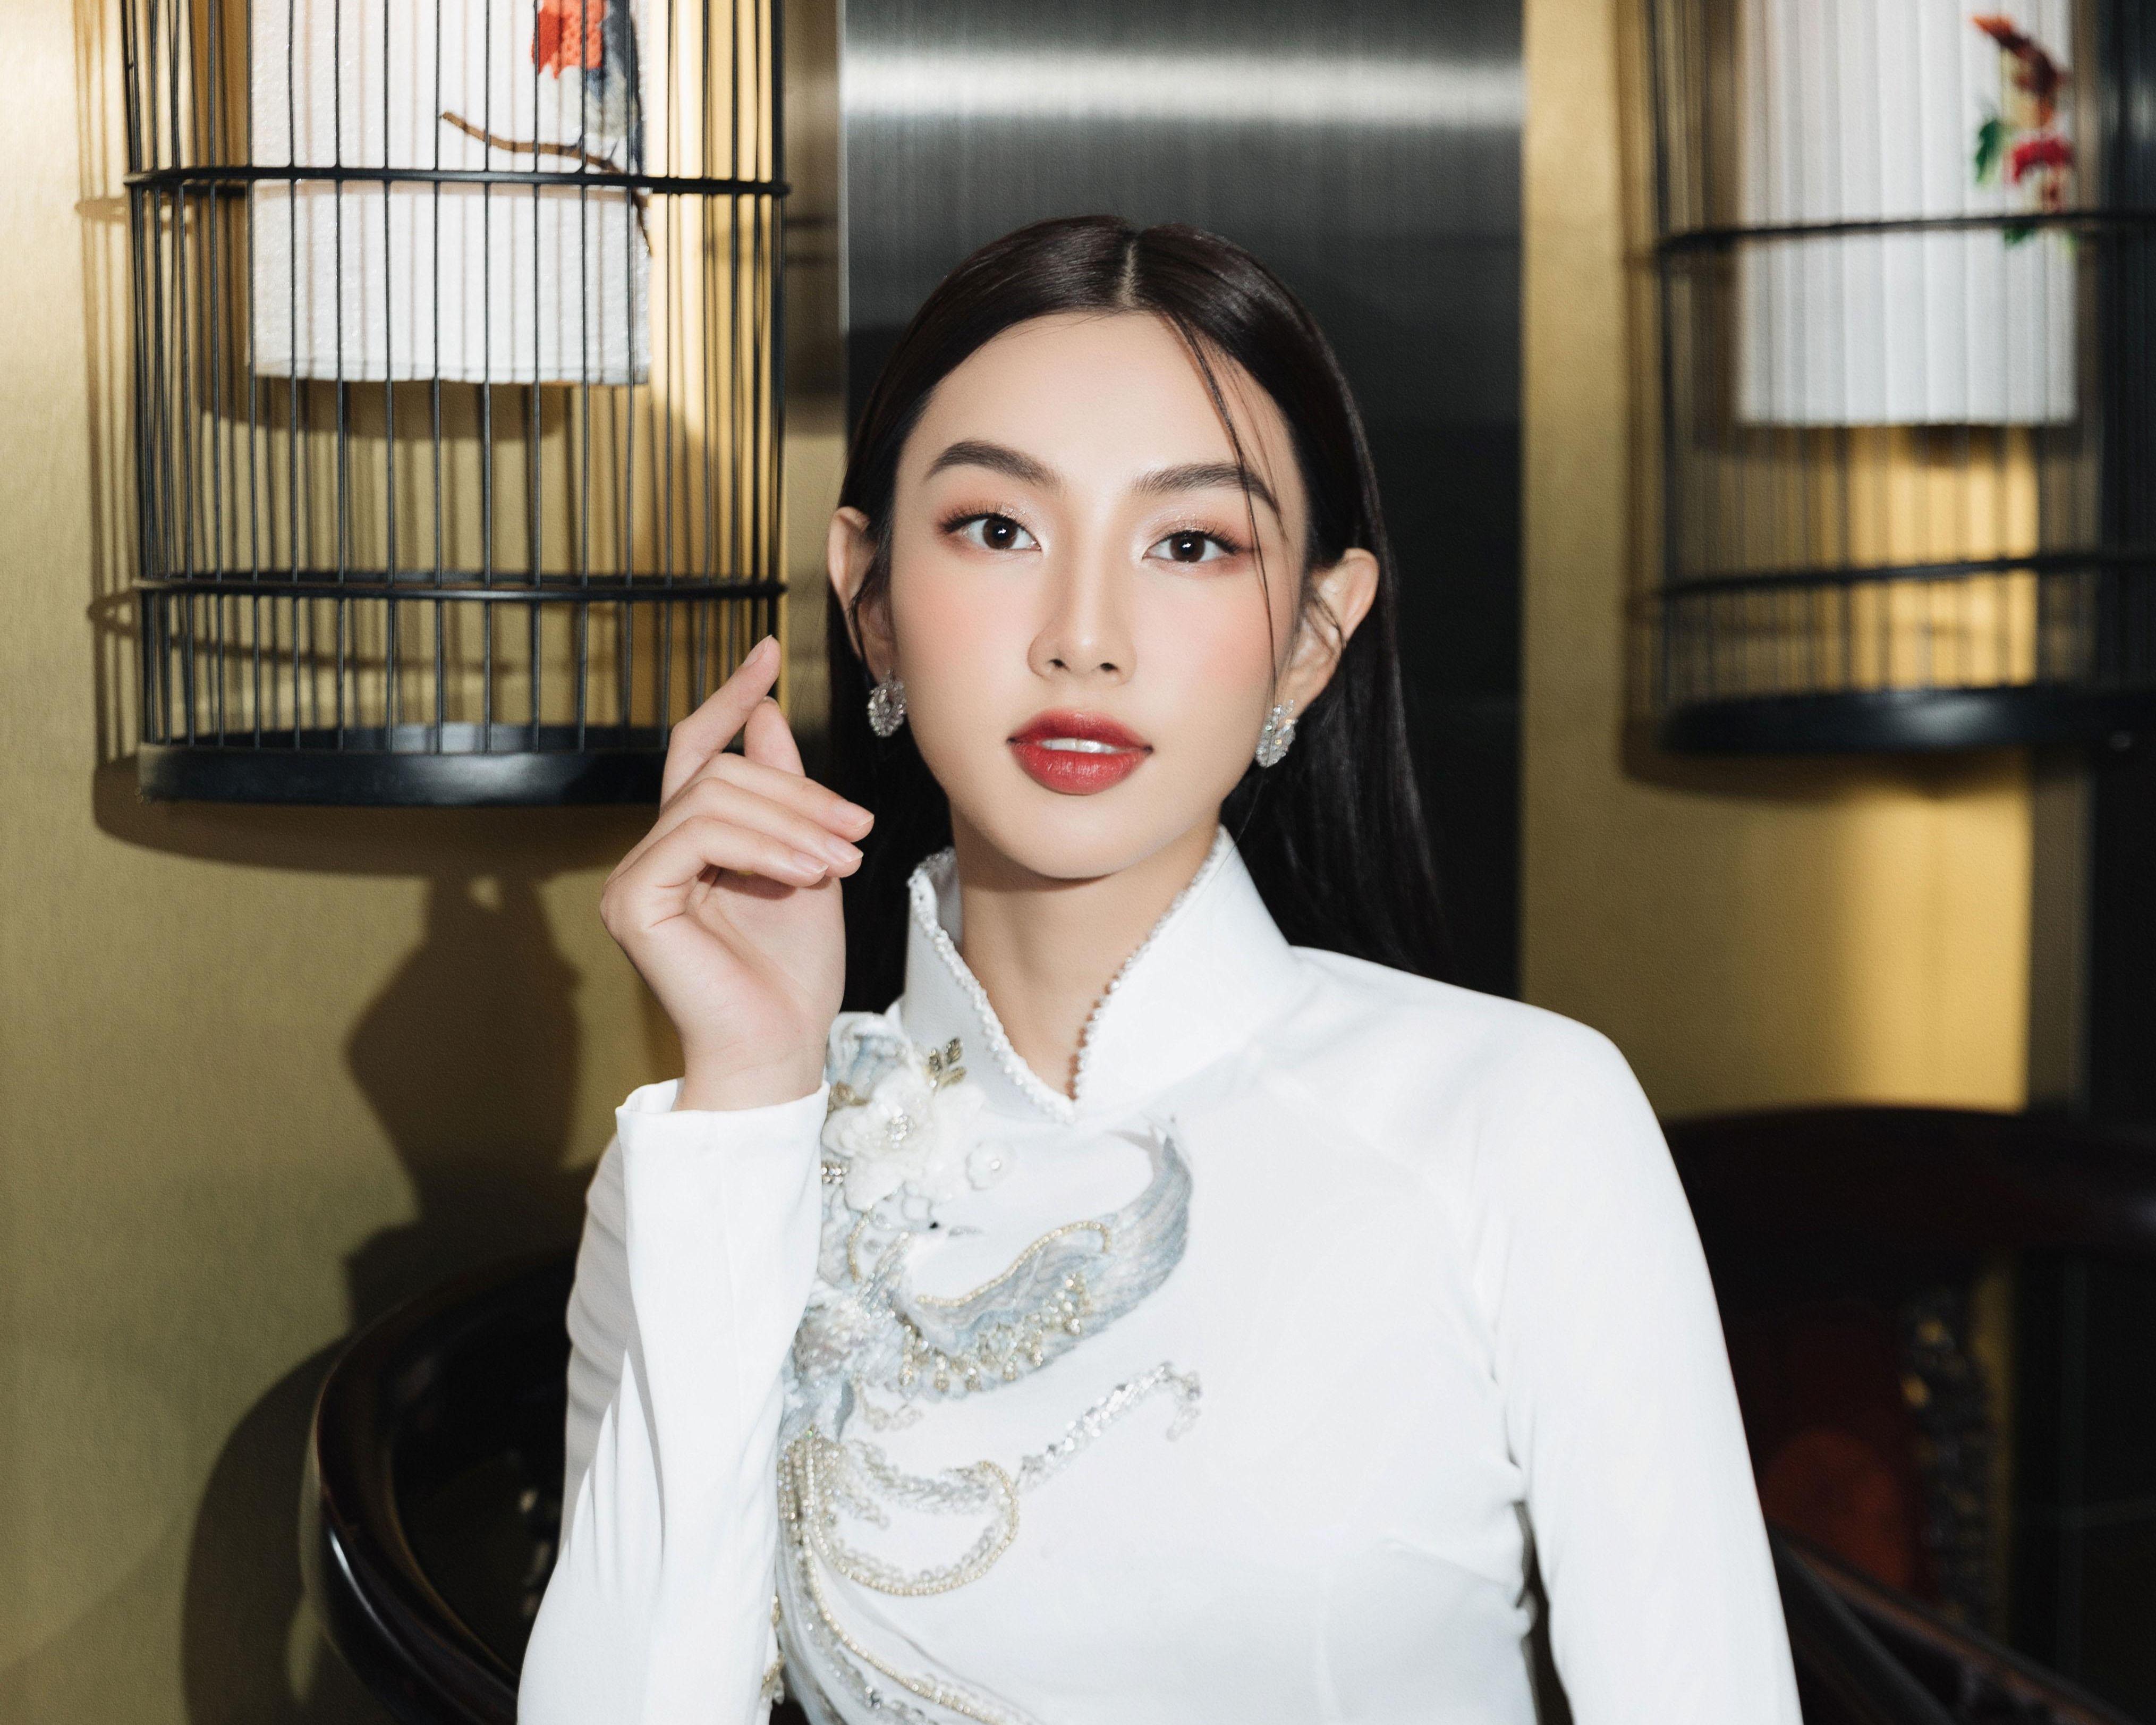 Hoa hậu Thùy Tiên nền nã với áo dài truyền thống trong vai trò đại sứ Hội chợ Du lịch Quốc tế TP.HCM